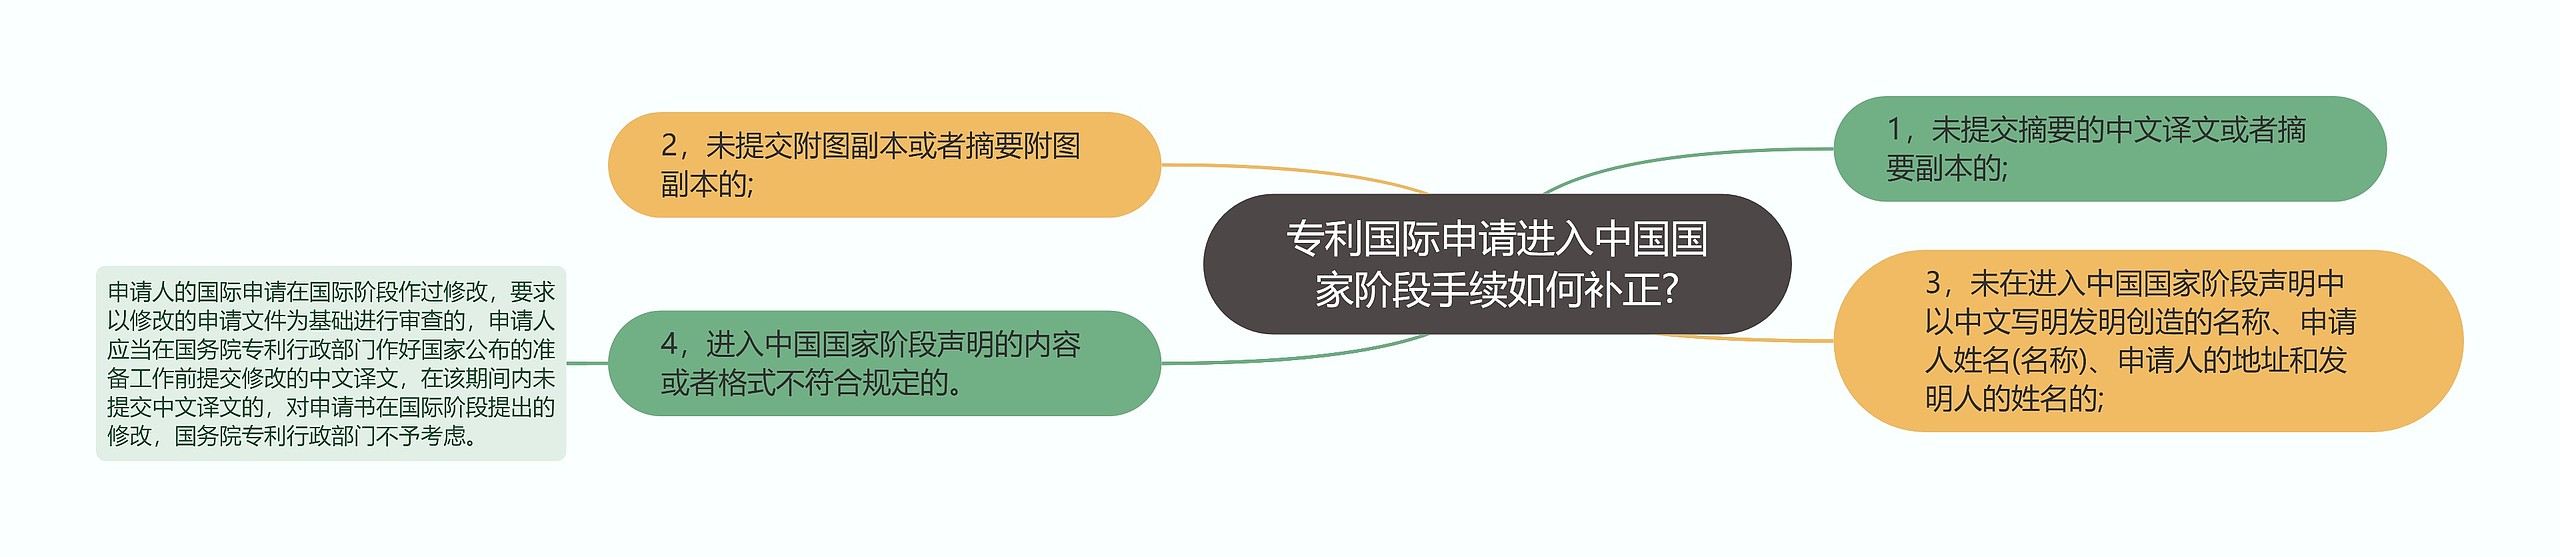 专利国际申请进入中国国家阶段手续如何补正?思维导图